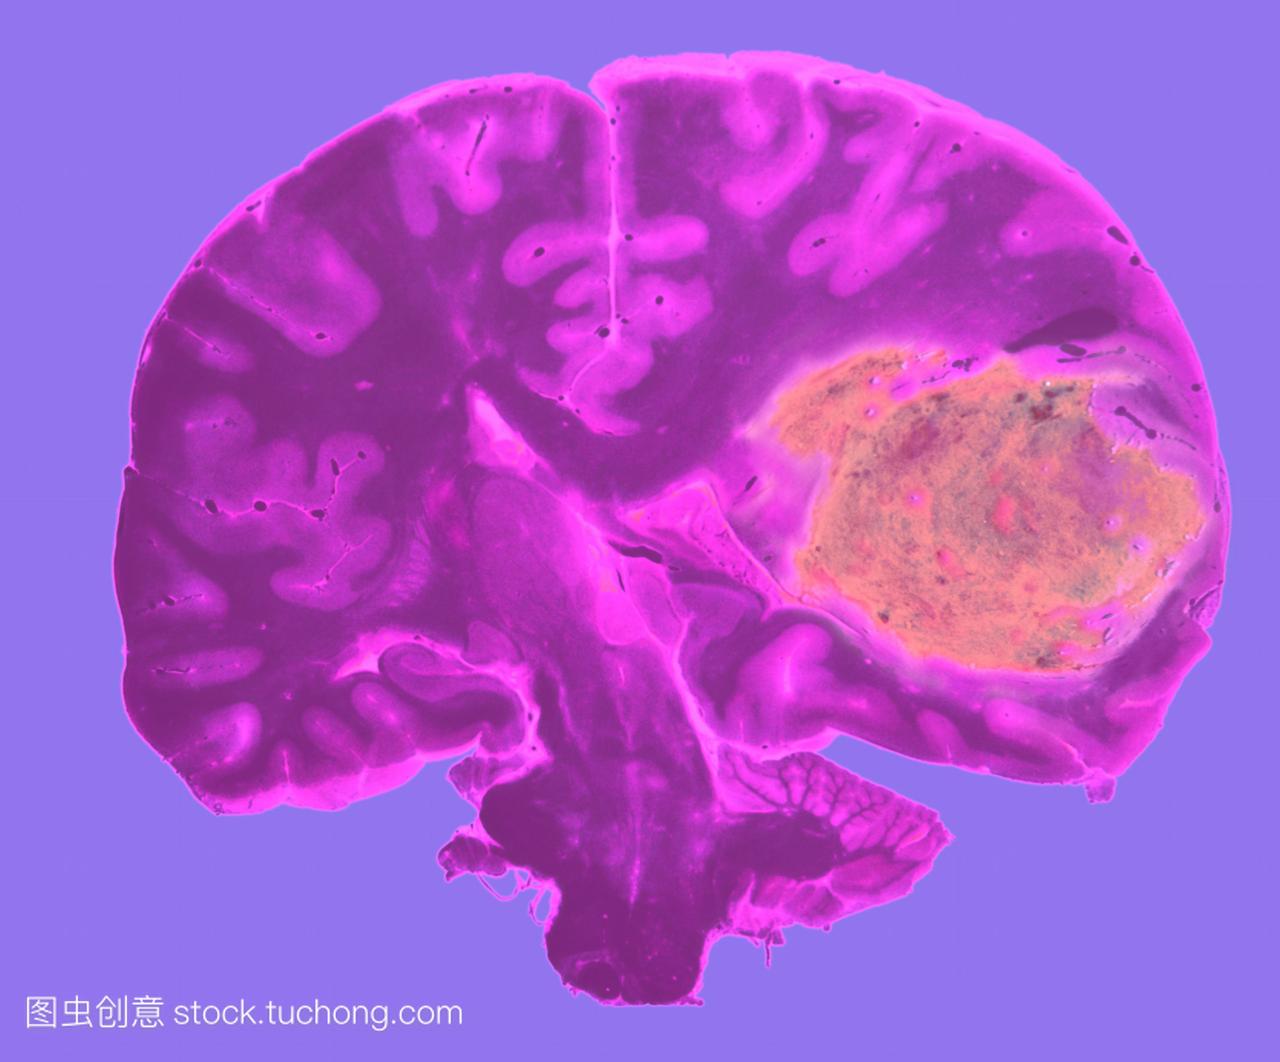 脑部肿瘤。通过大脑显示一个大肿瘤粉红色,右